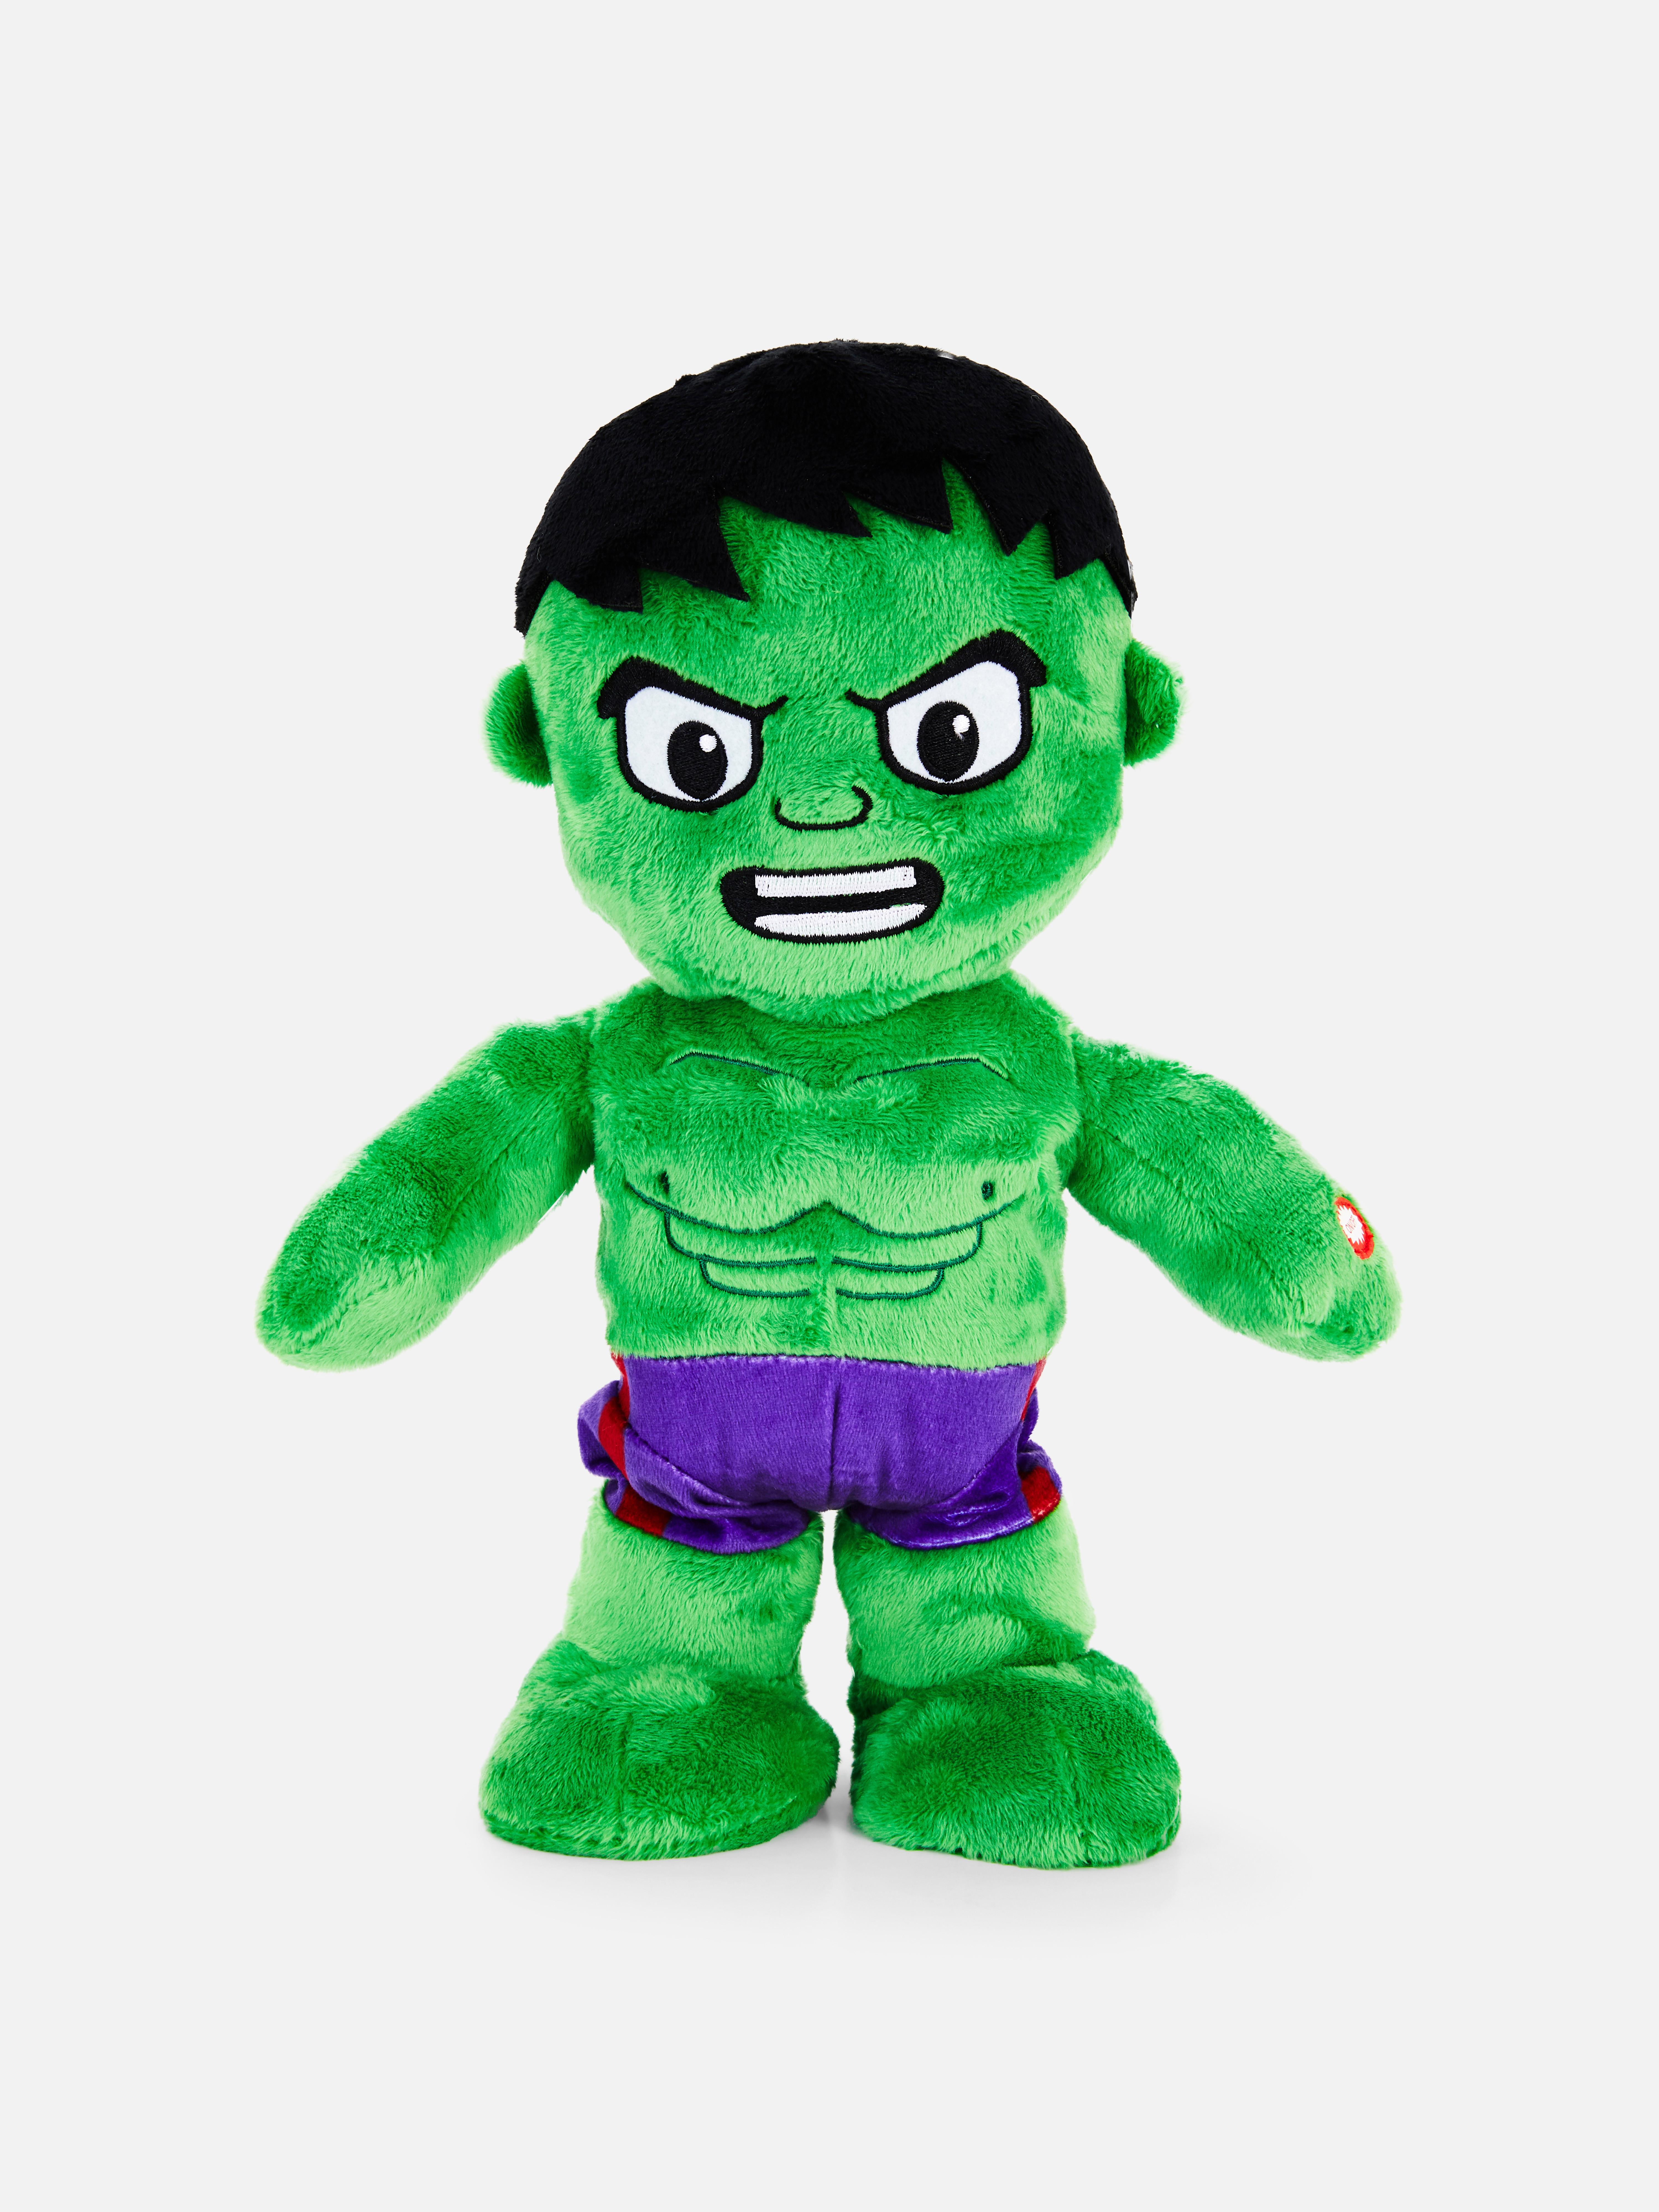 Marvel The Incredible Hulk Walking and Singing Plush Toy